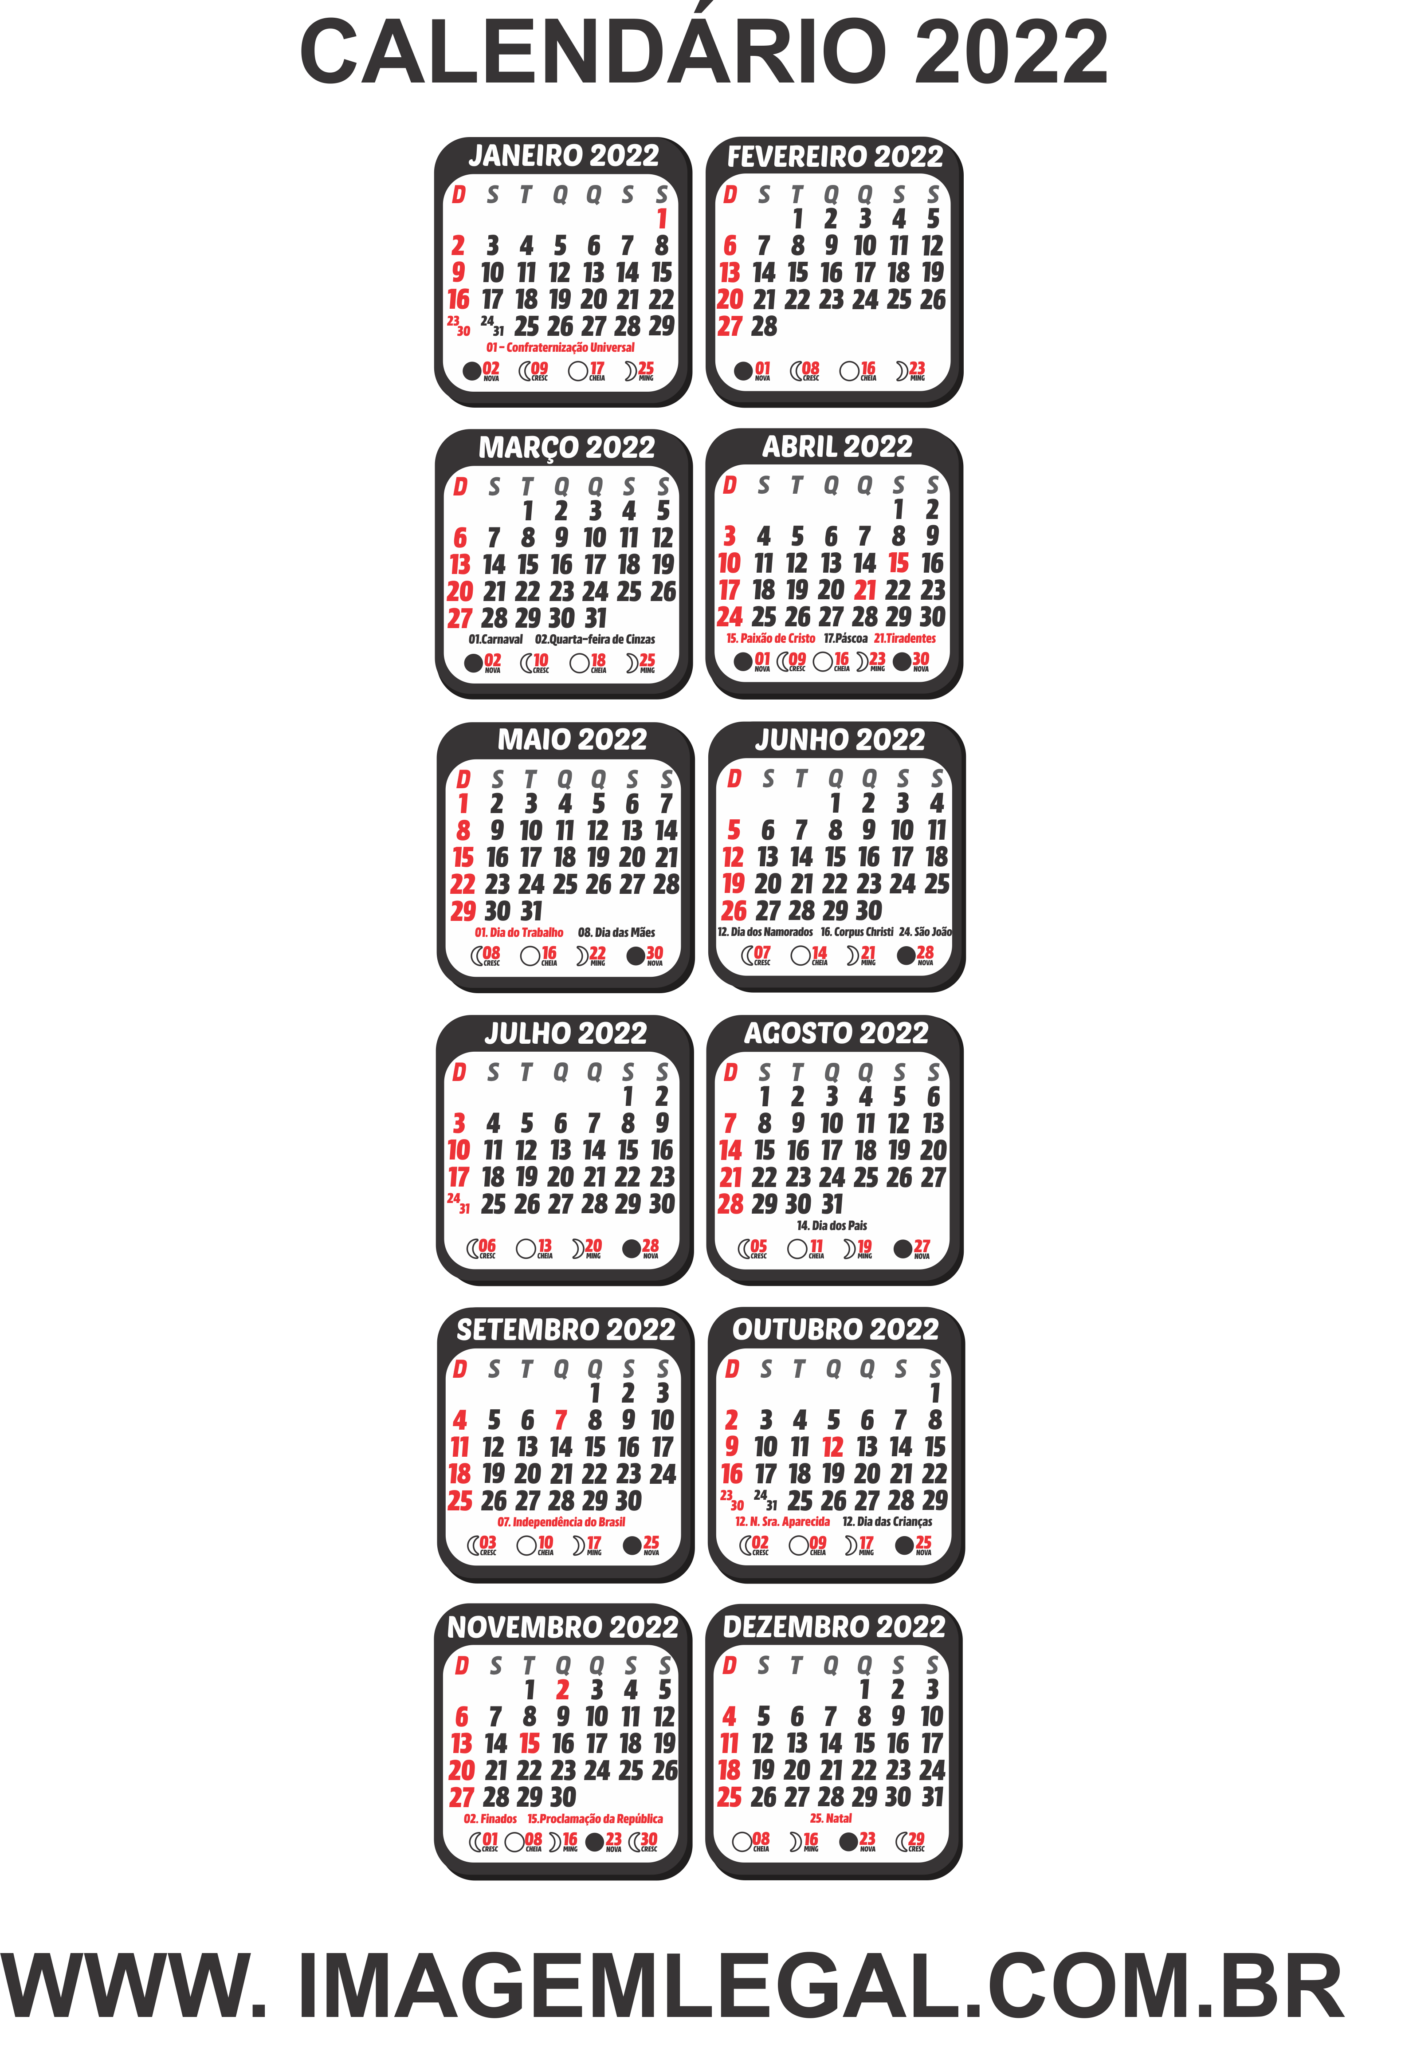 Calendário 2020 Png Preto E Branco Vertical 2x6 Imagem Legal